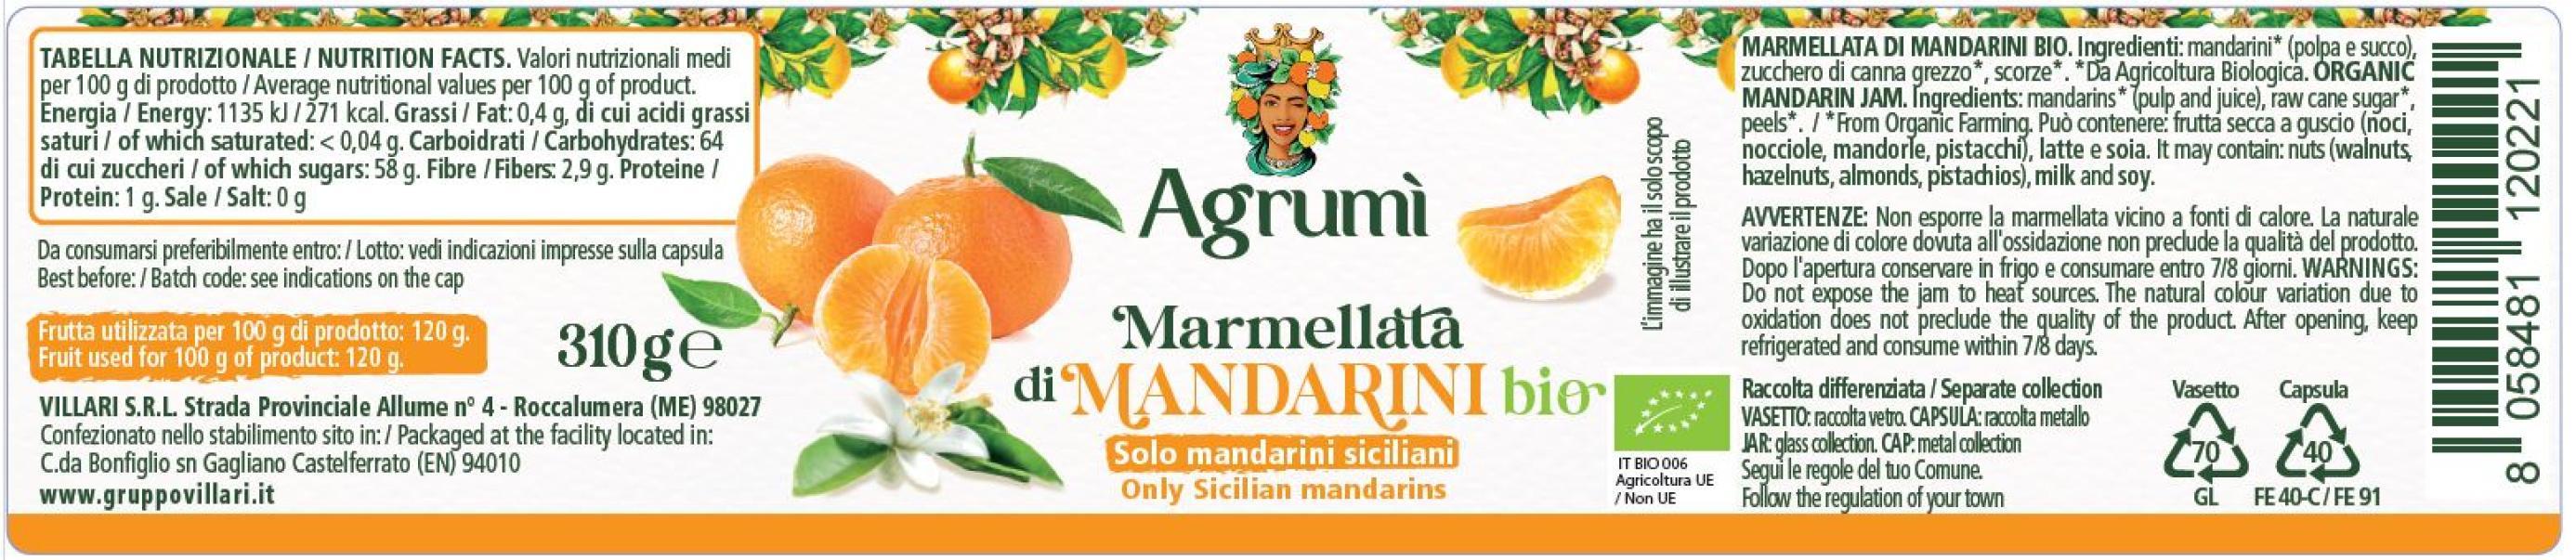 Marmellata di mandarini BIO Agrumi ricetta tradizionale 310gr x 6pz. Etichetta valori nutrizionali e ingredienti